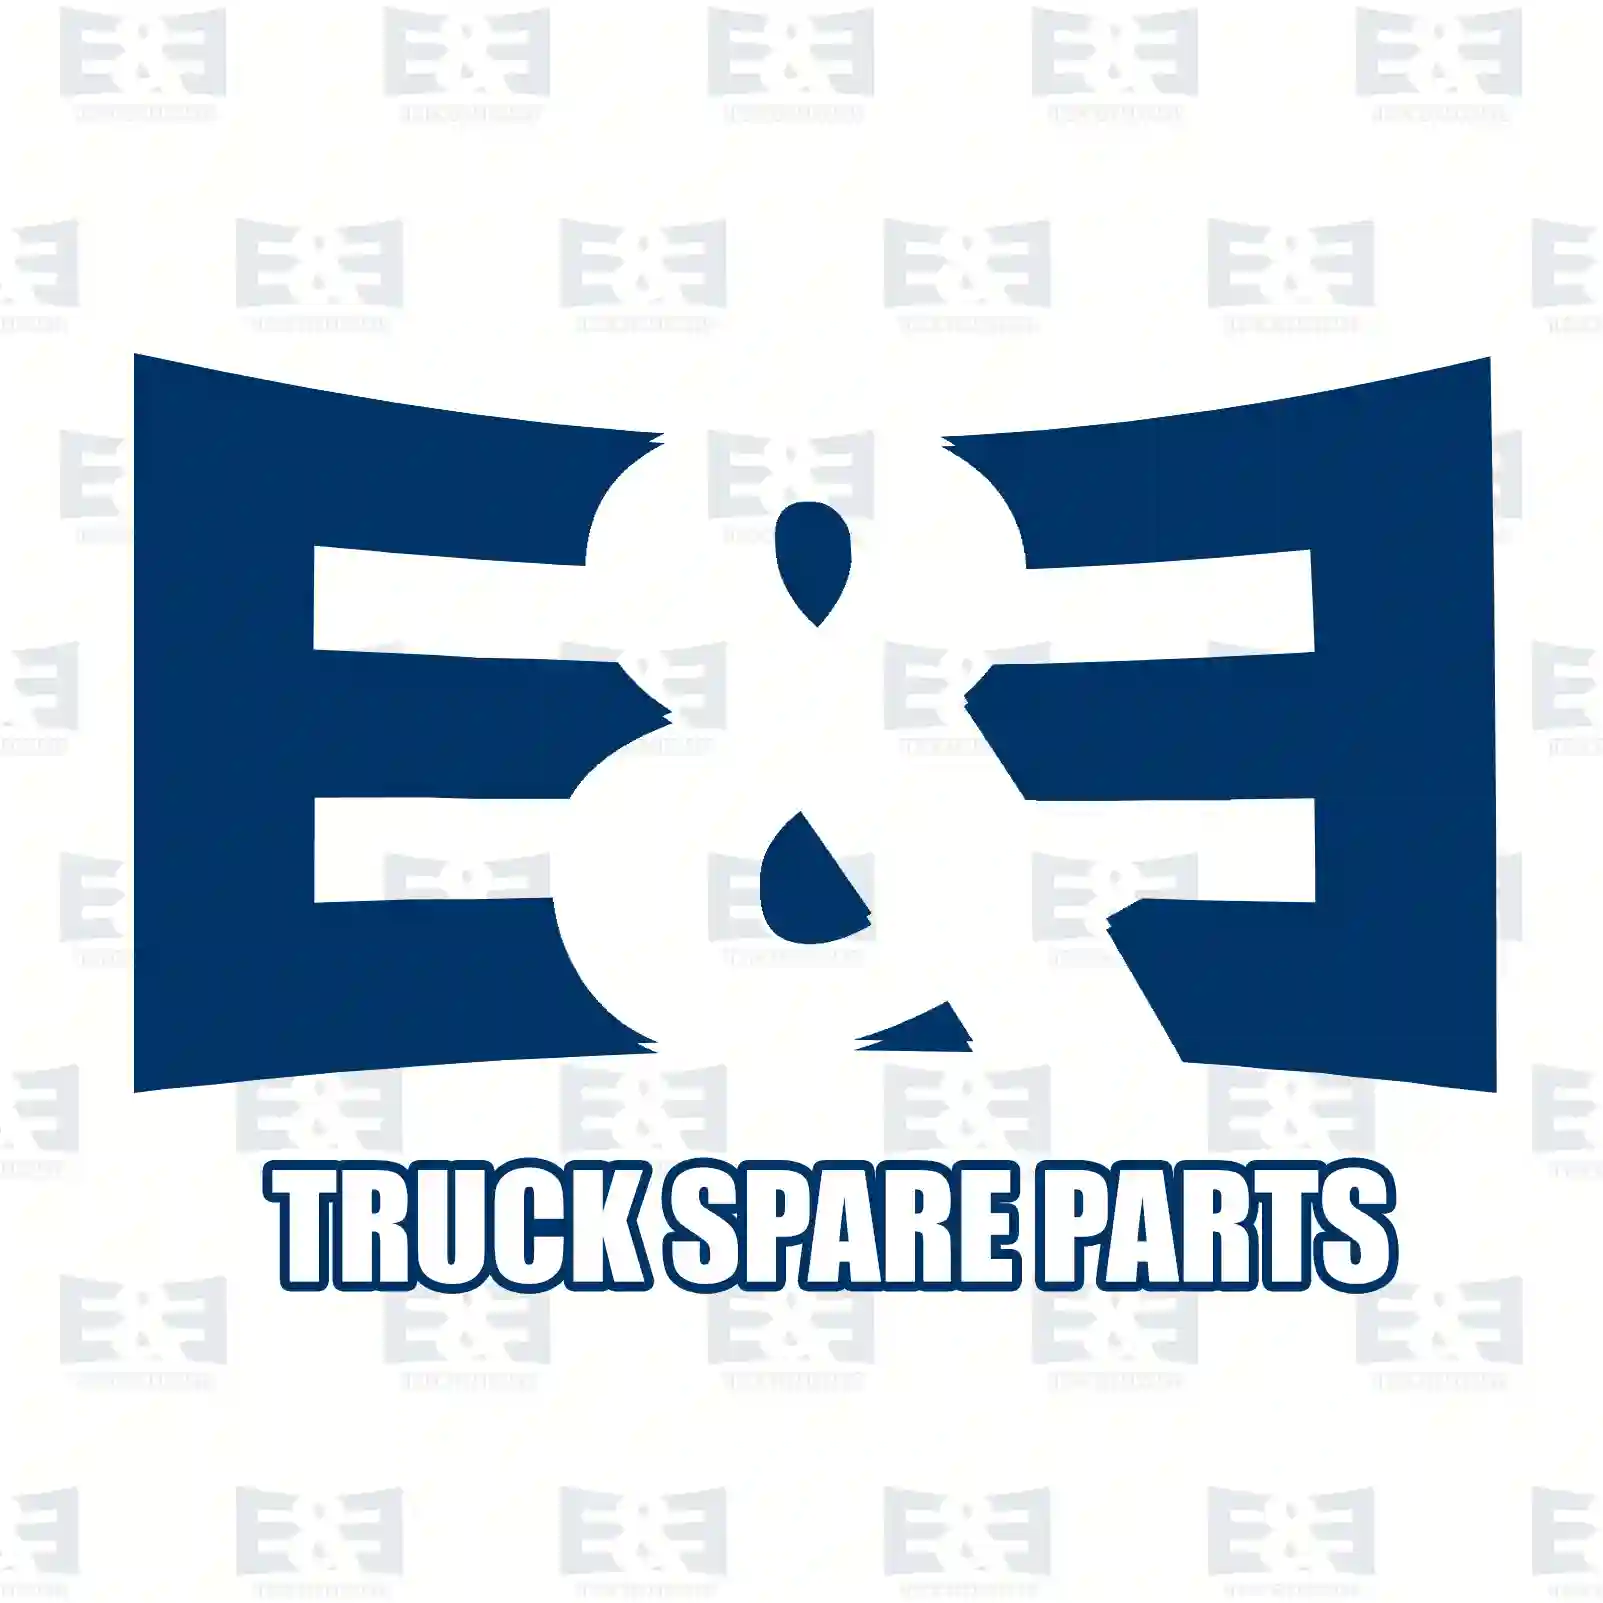 Oil cooler, 2E2209103, 0011888801, 0011888901, ||  2E2209103 E&E Truck Spare Parts | Truck Spare Parts, Auotomotive Spare Parts Oil cooler, 2E2209103, 0011888801, 0011888901, ||  2E2209103 E&E Truck Spare Parts | Truck Spare Parts, Auotomotive Spare Parts